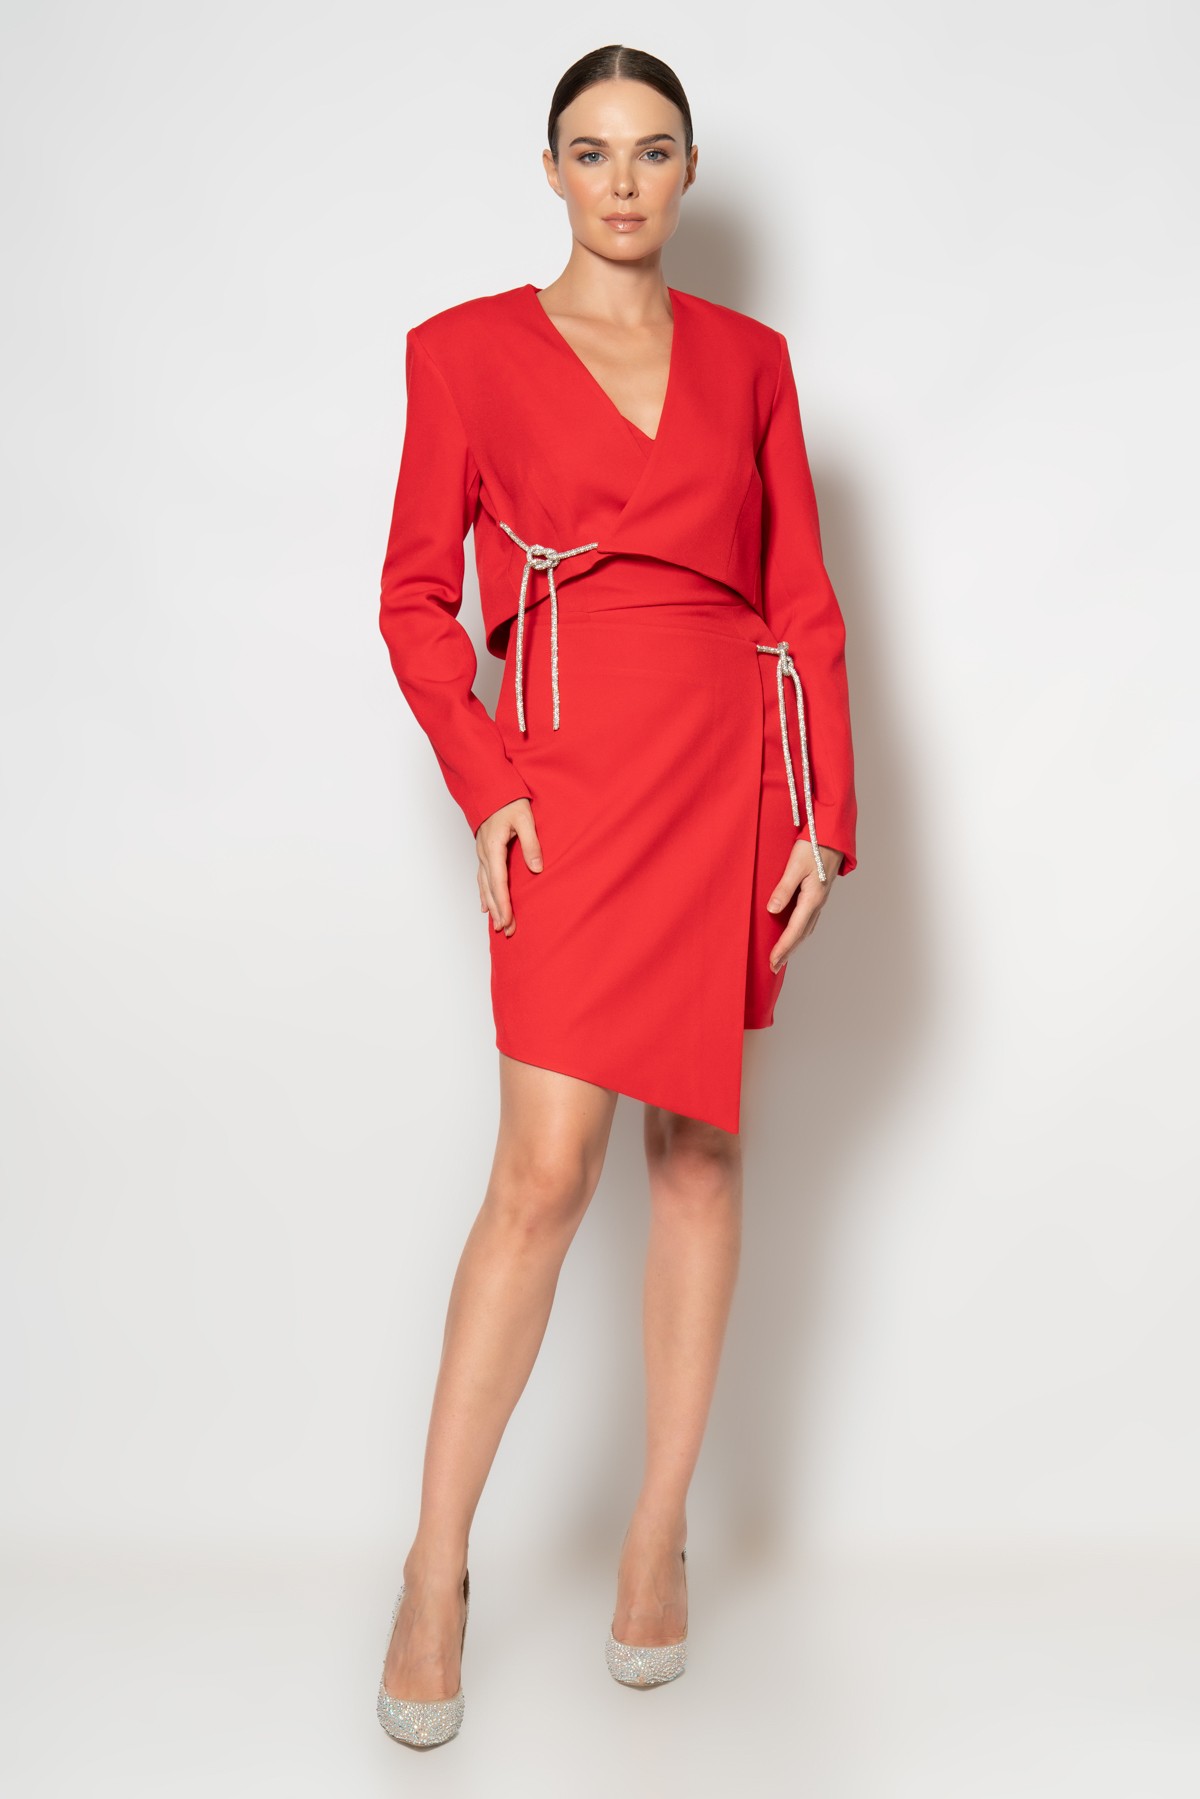 Eteği ve göğsü taş şerit halatlı ceket elbise krep ikili abiye takım - Kırmızı